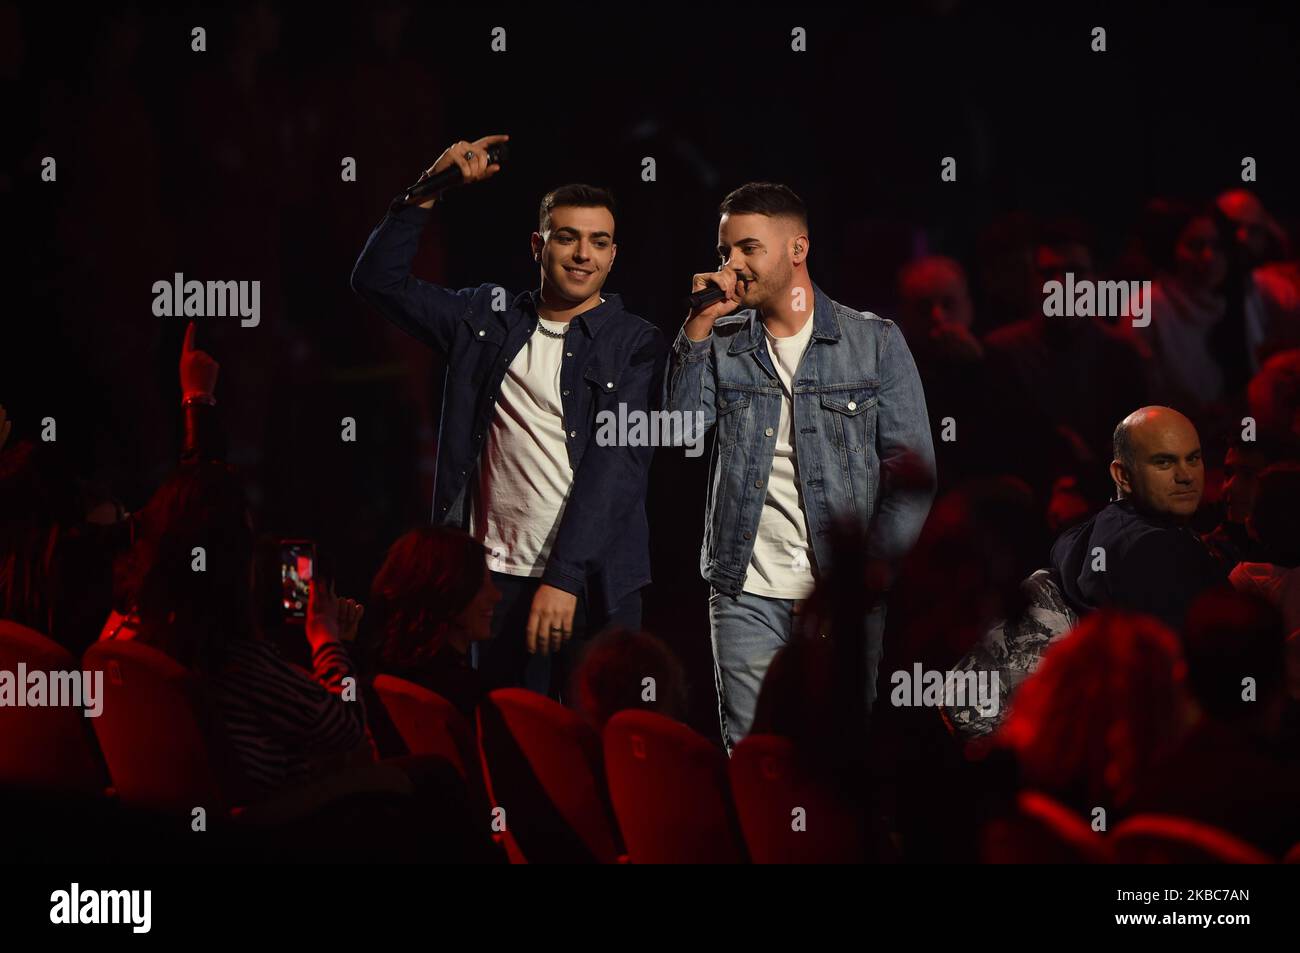 Le groupe italien la Sierra chante lors de l'édition italienne semi-finale de l'émission internationale de télévision X Factor, en X Factor Dome, à Monza, en Italie (photo par Andrea Diodato/NurPhoto) Banque D'Images